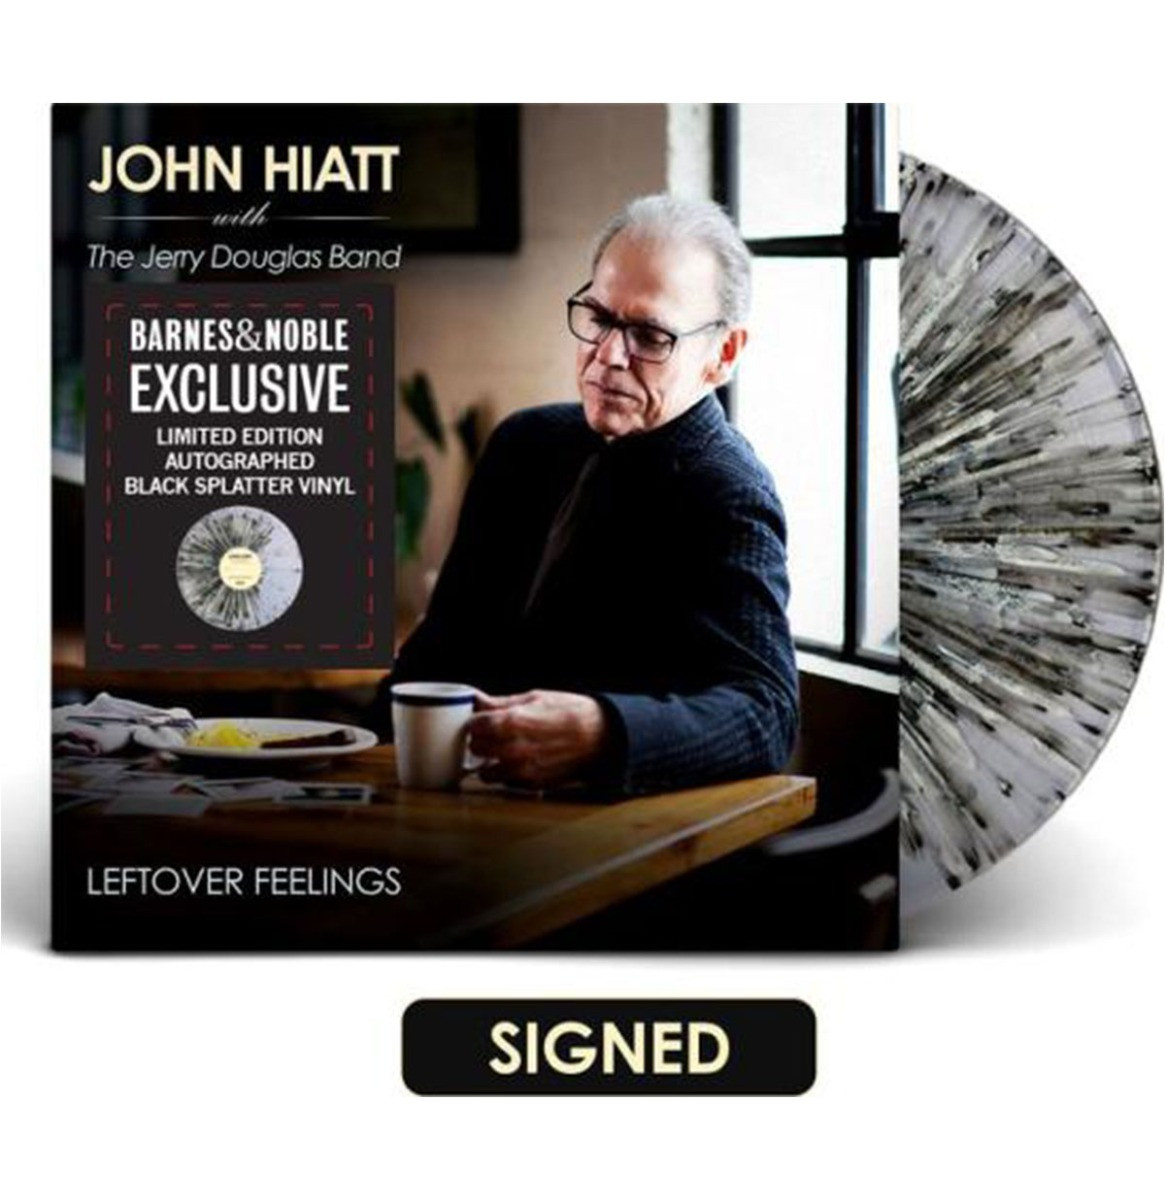 John Hiatt - Leftover Feelings (Gekleurd Vinyl) (Gesigneerde Editie) (Barnes & Noble Exclusive) LP